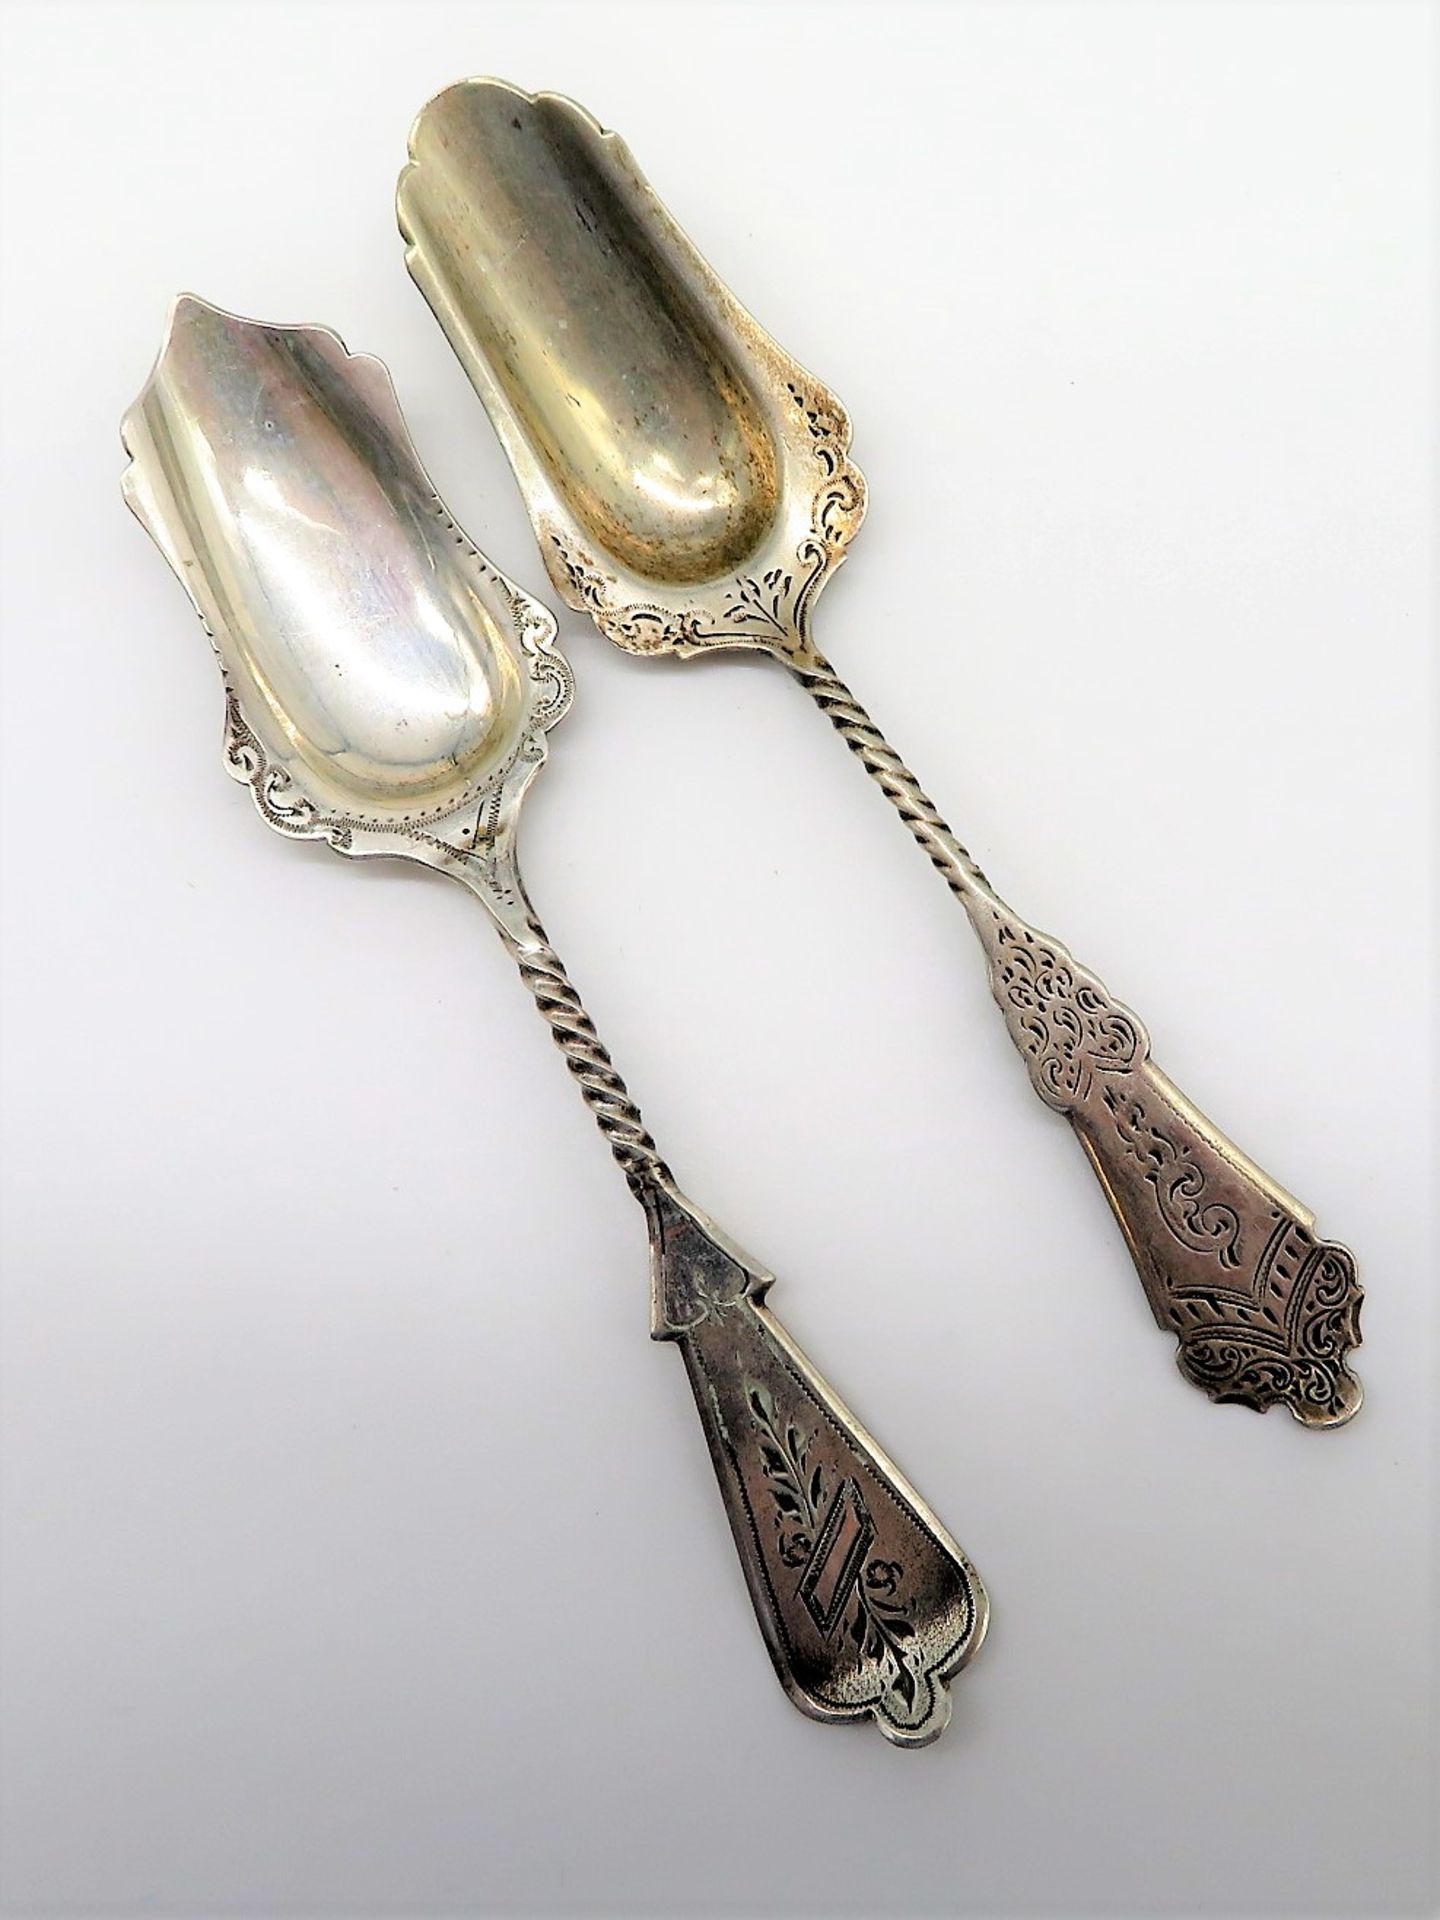 2 diverse Zuckerschaufeln, um 1900, 835er Silber, gepunzt, 22 g, l 12,2 cm.